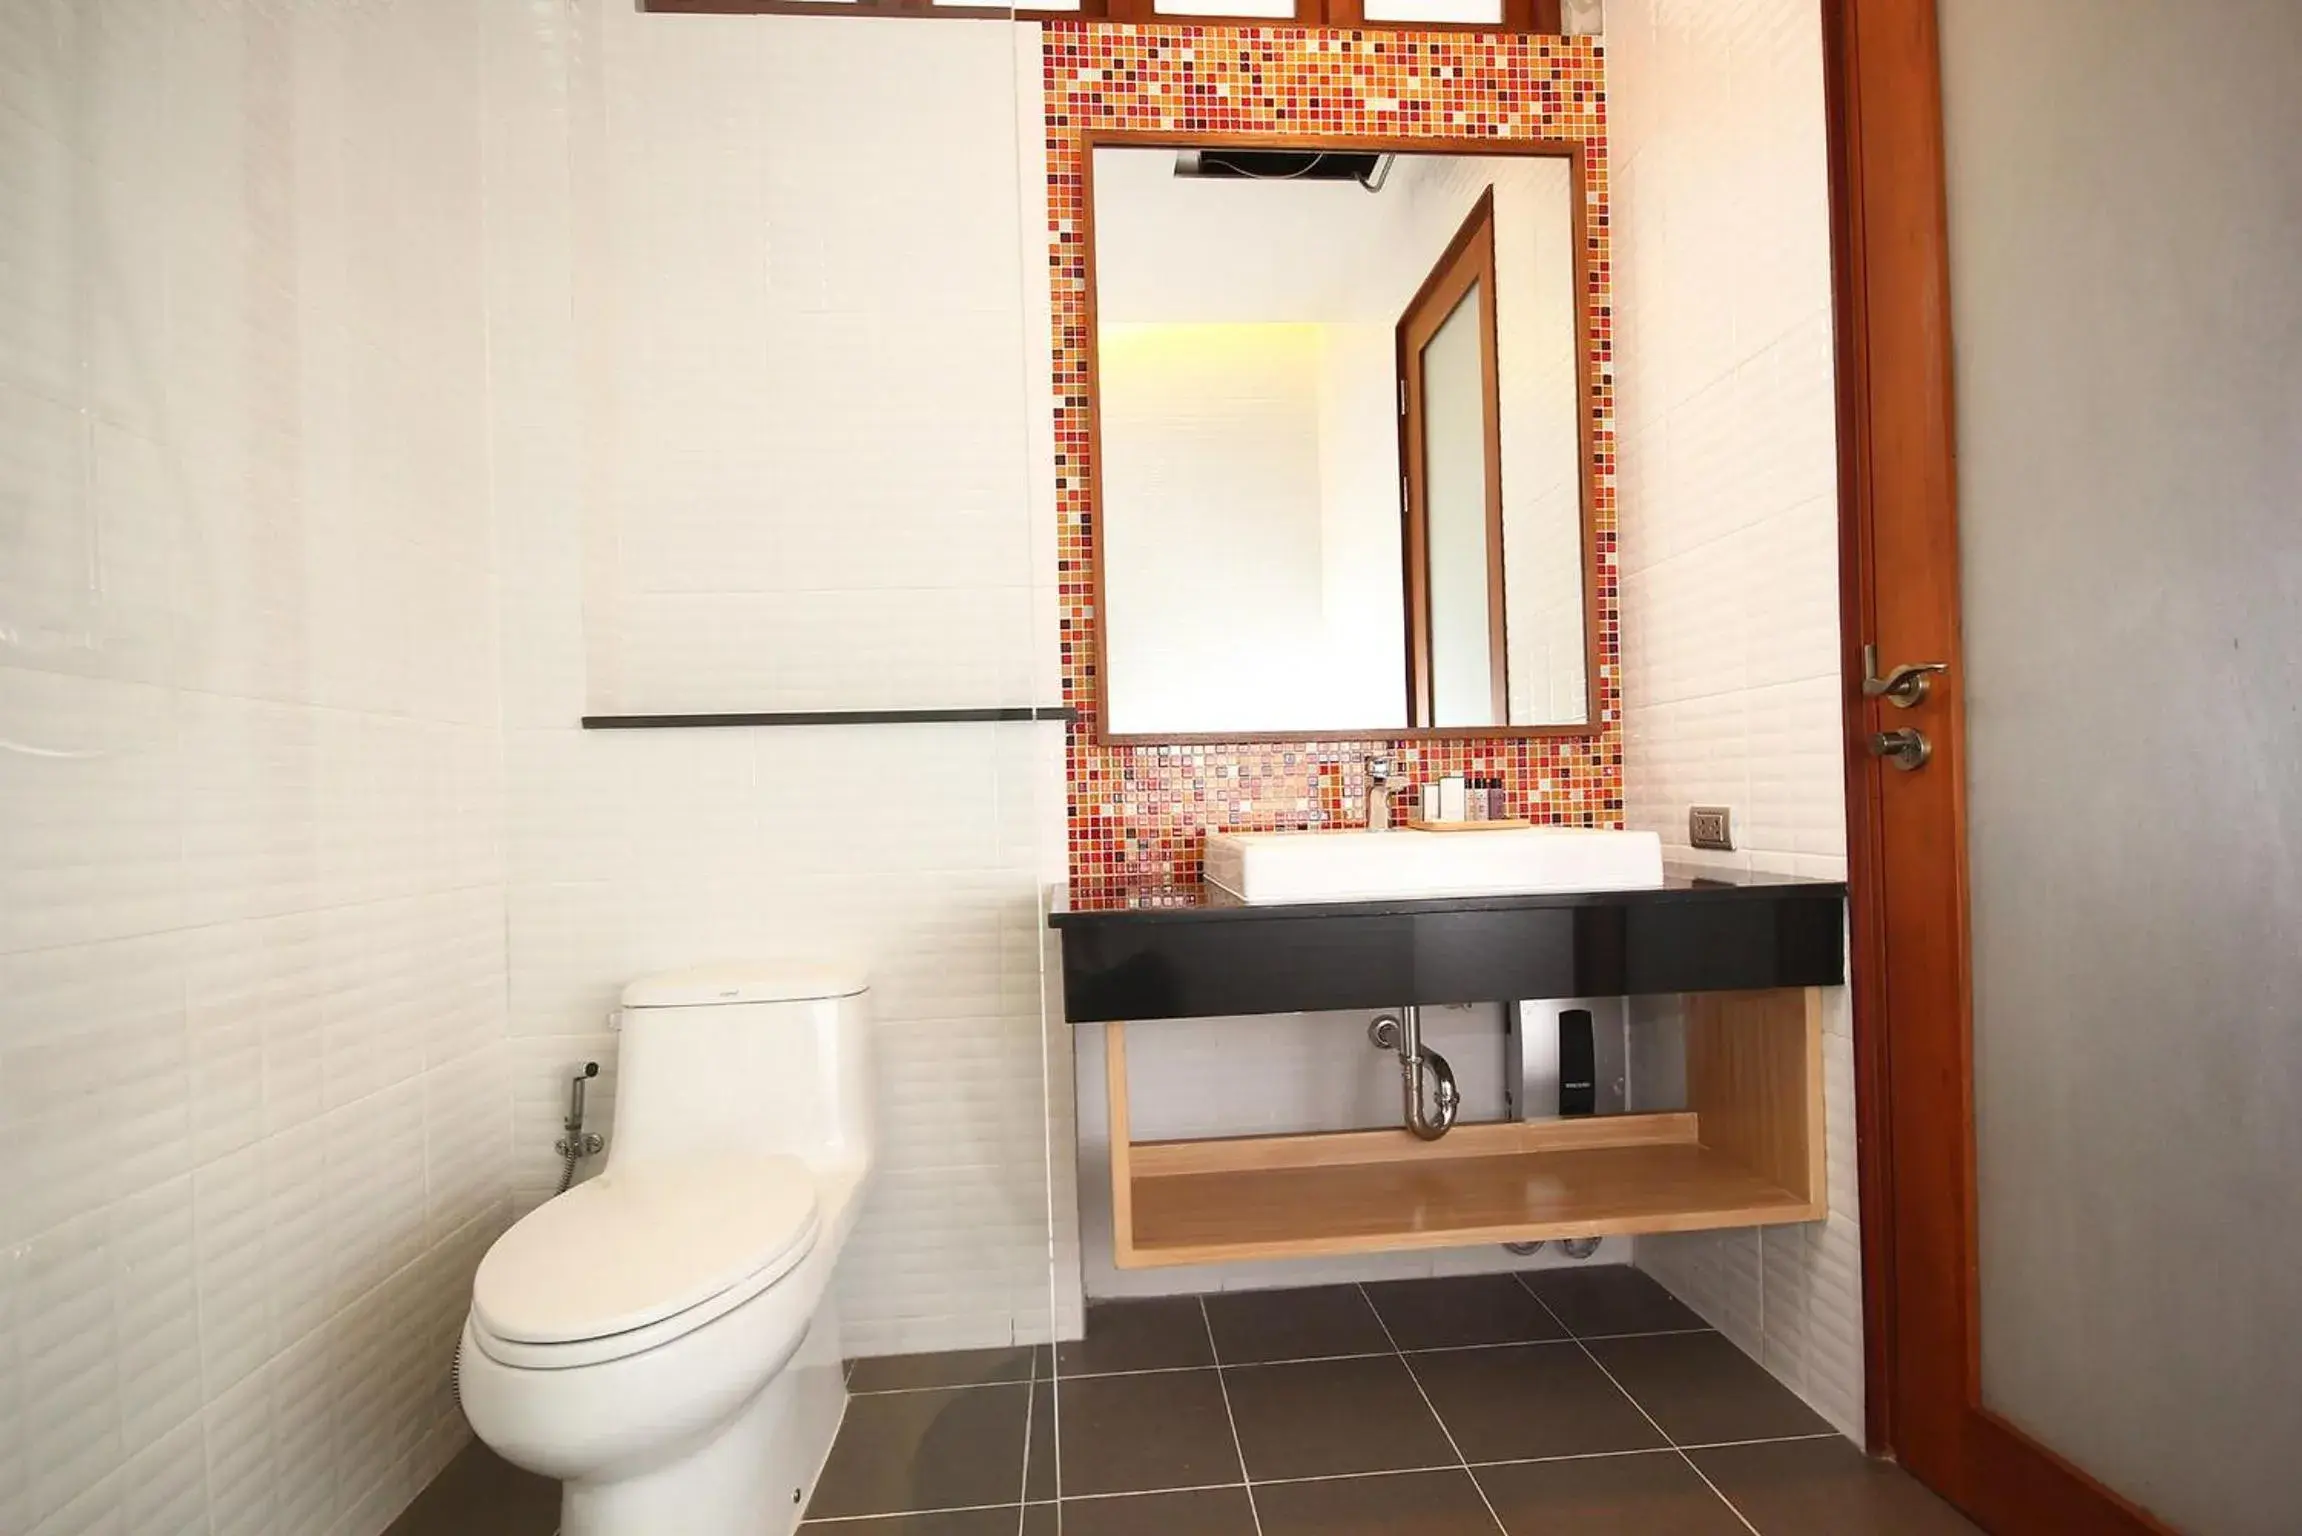 Toilet, Bathroom in Chu Hotel